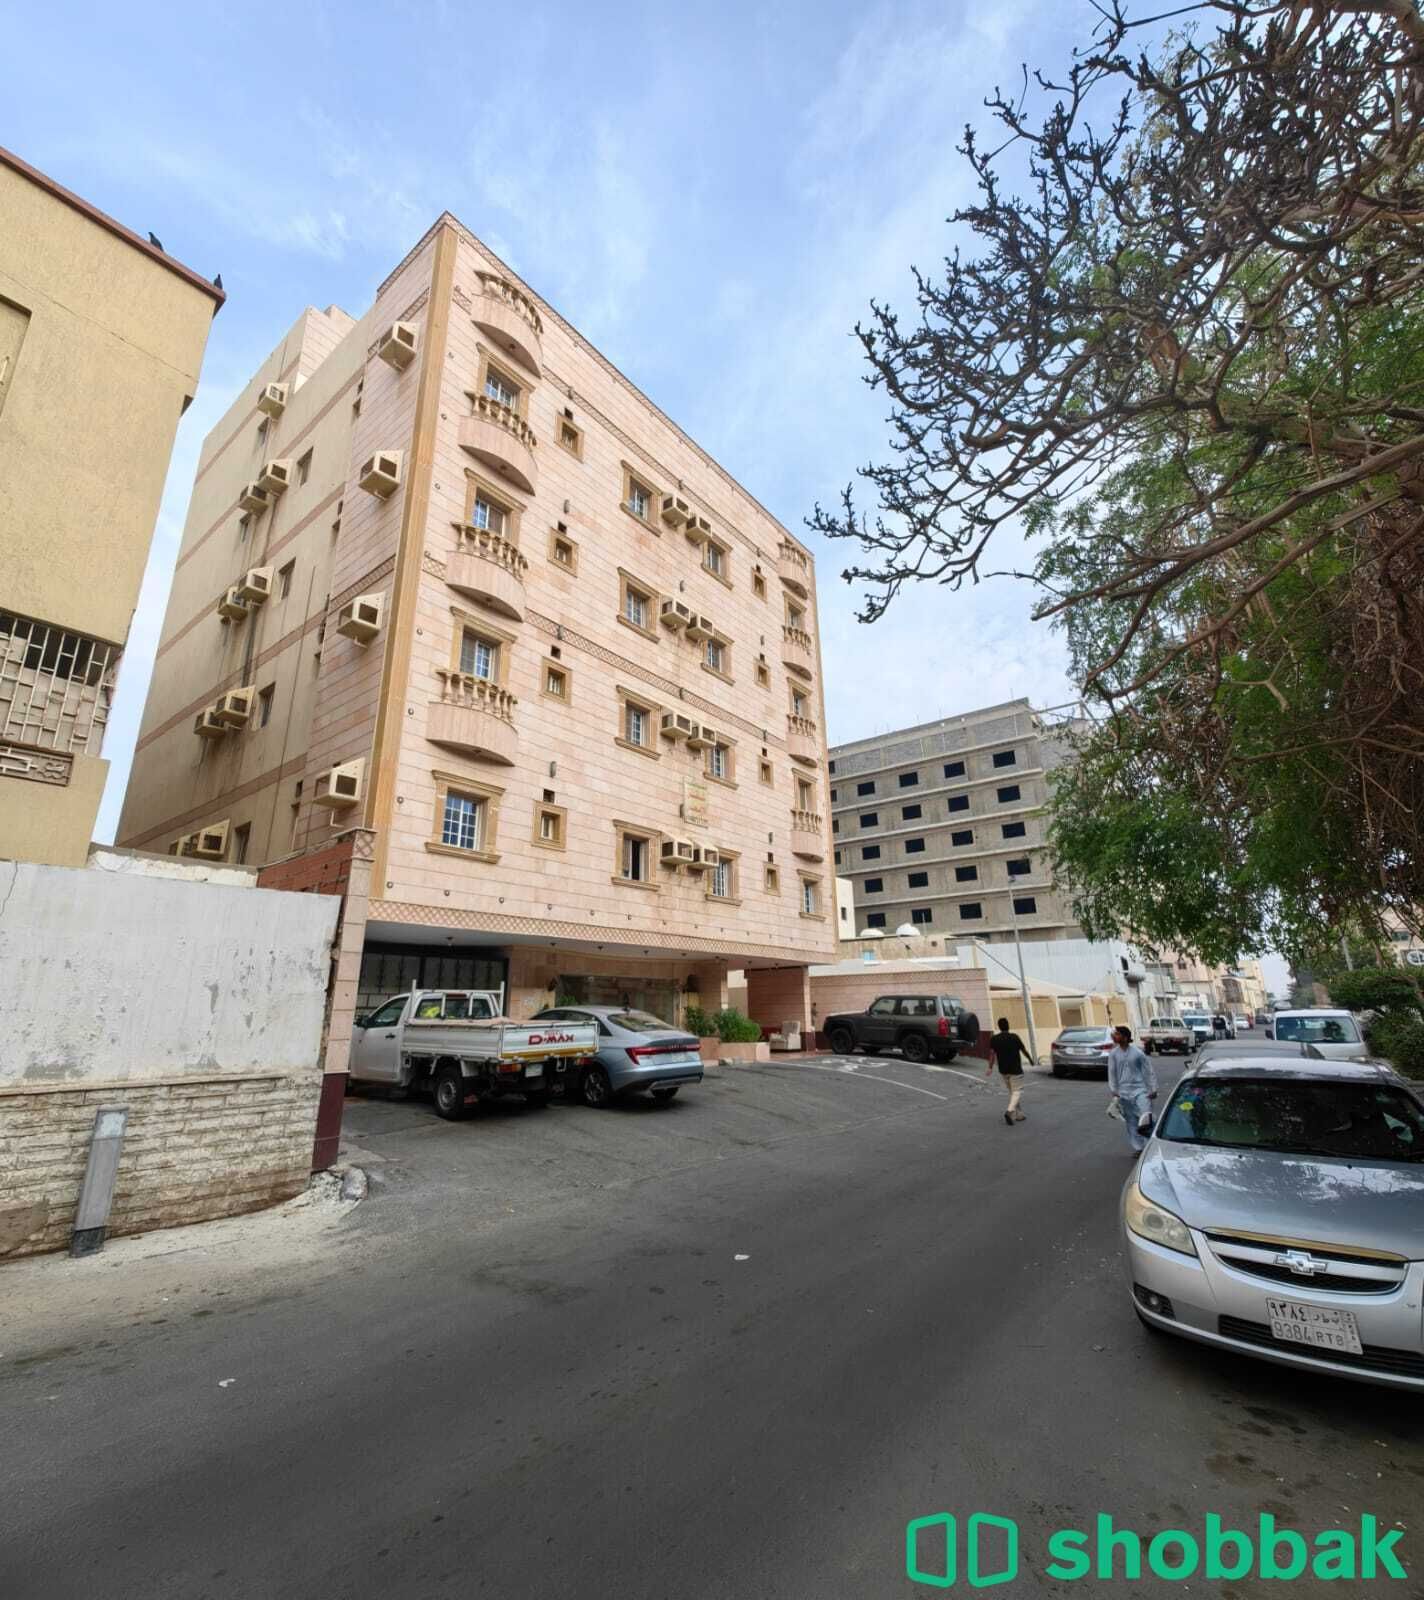 شقة من غرفتين للايجار ومطبخ وحمامين في جدة في حي مشرفه  Shobbak Saudi Arabia